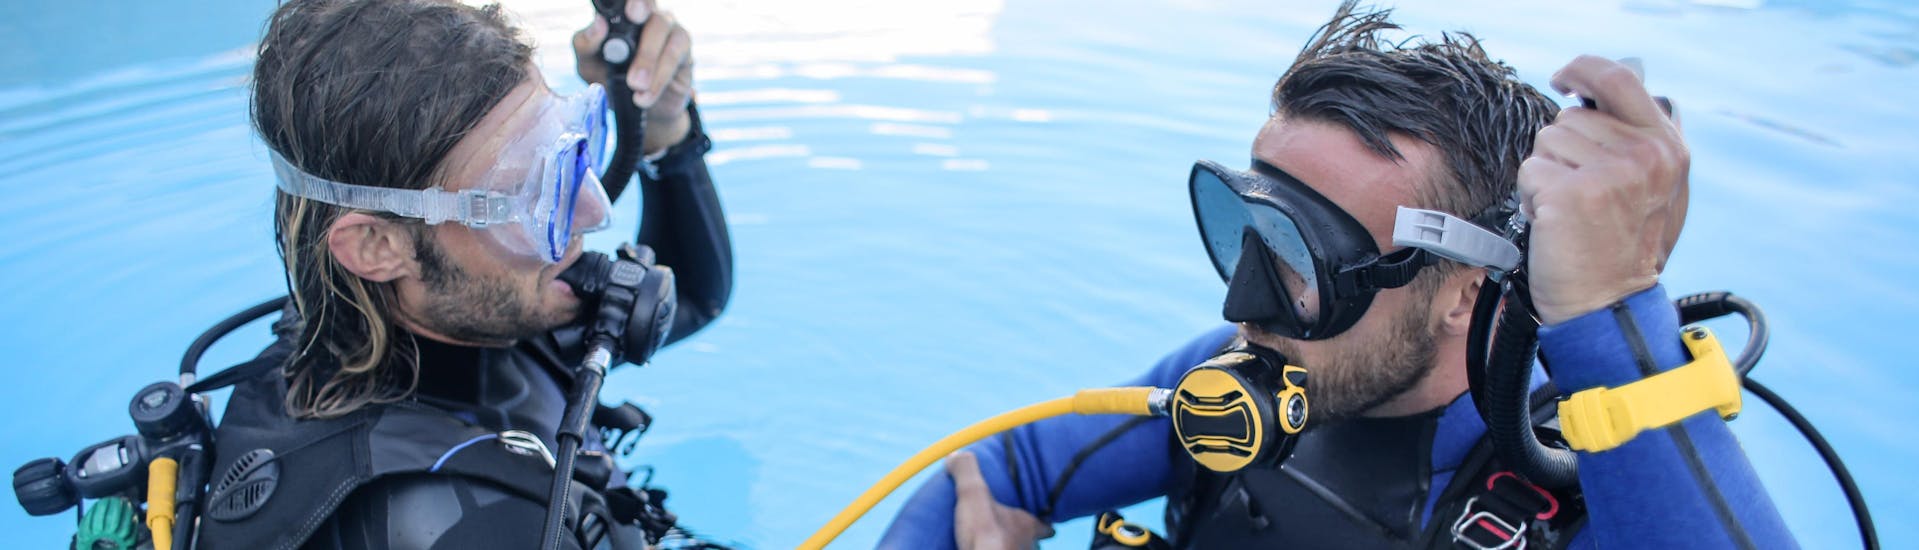 Durante una immersioni di prova per principianti, un istruttore di immersioni insegna a uno studente come usare la sua attrezzatura subacquea in una piscina.